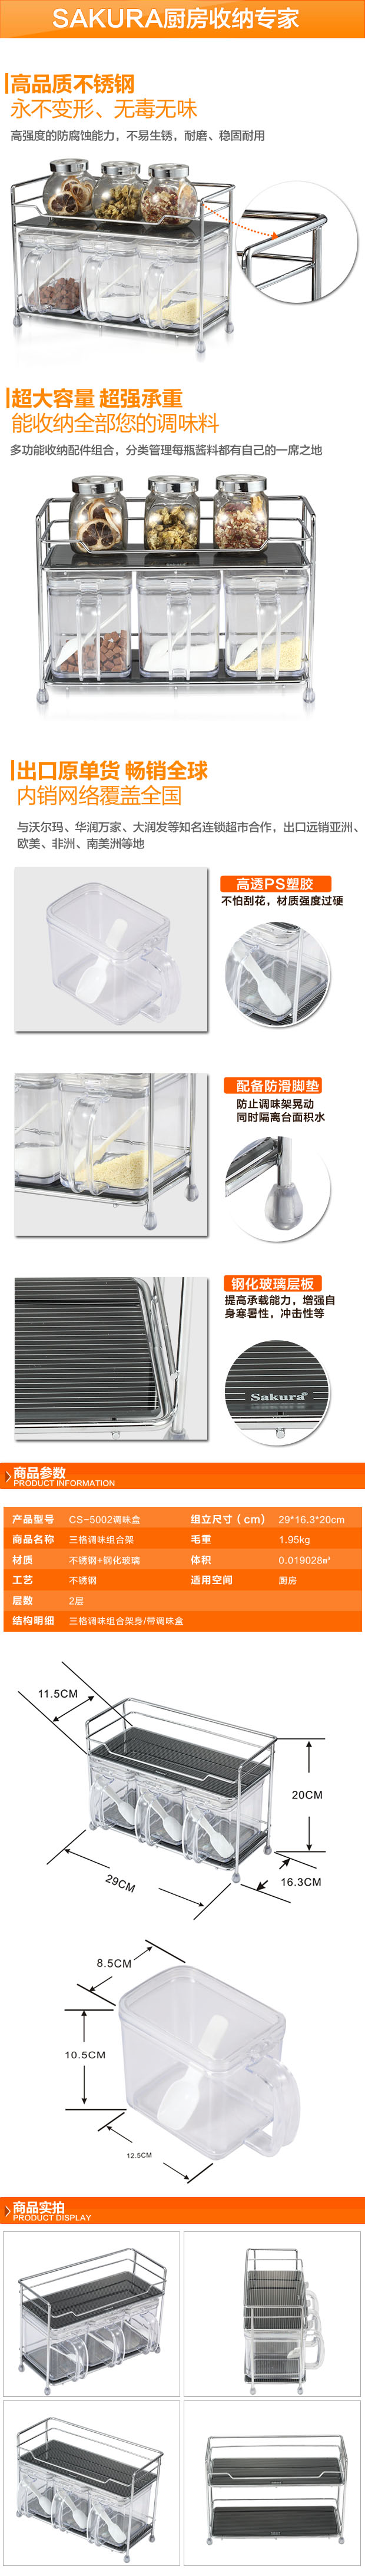 SAKURA stainless steel kitchens rack seasoning rack for three high-grade seasoning boxes1